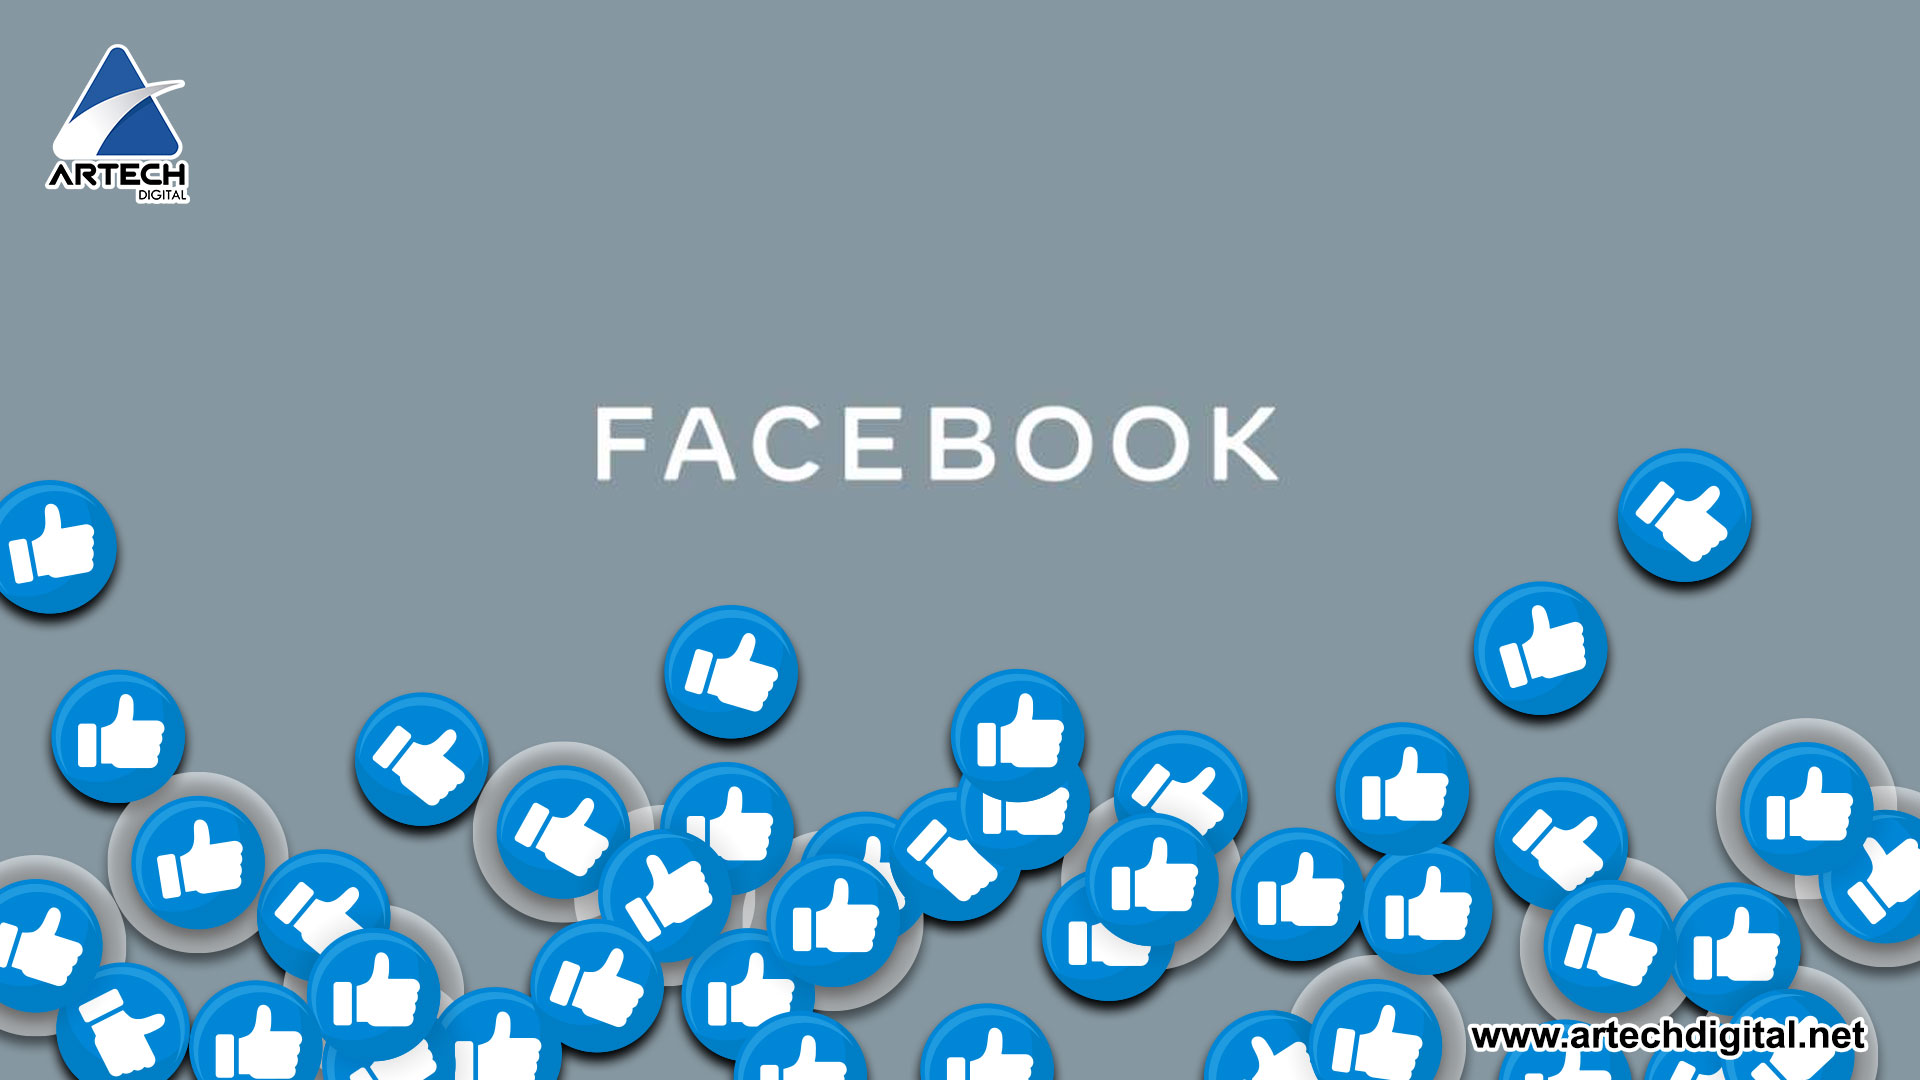 Facebook presenta logo corporativo